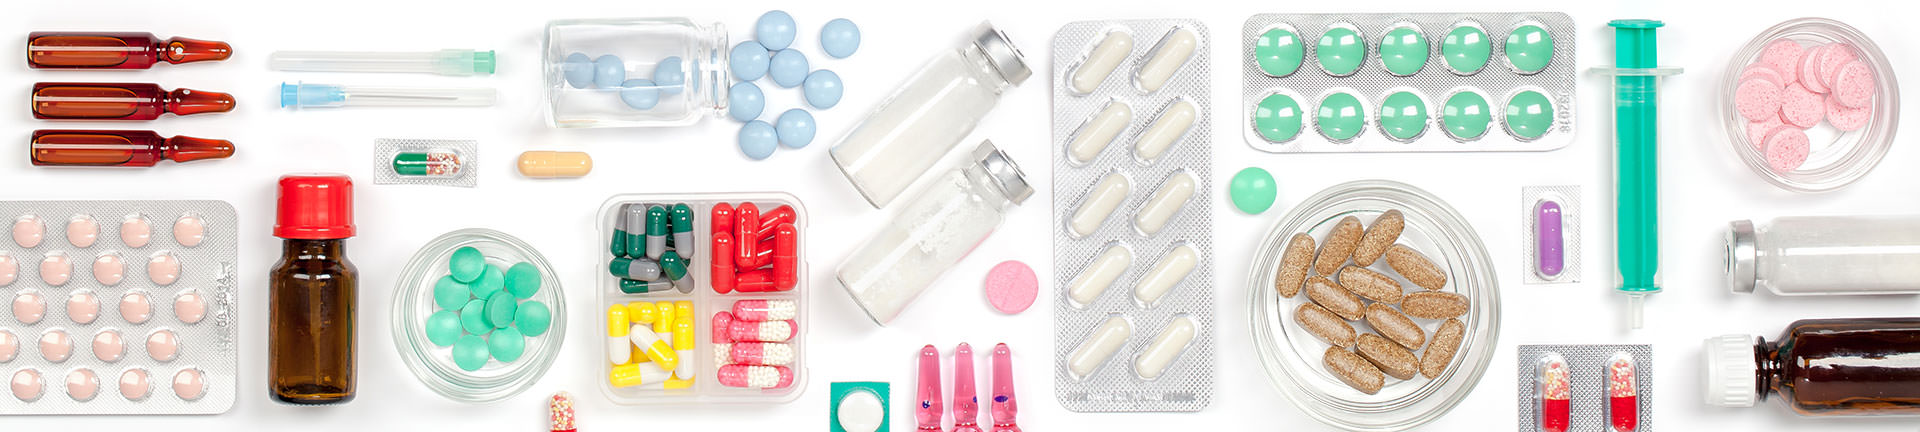 Pharma - Medikamentenvielfalt